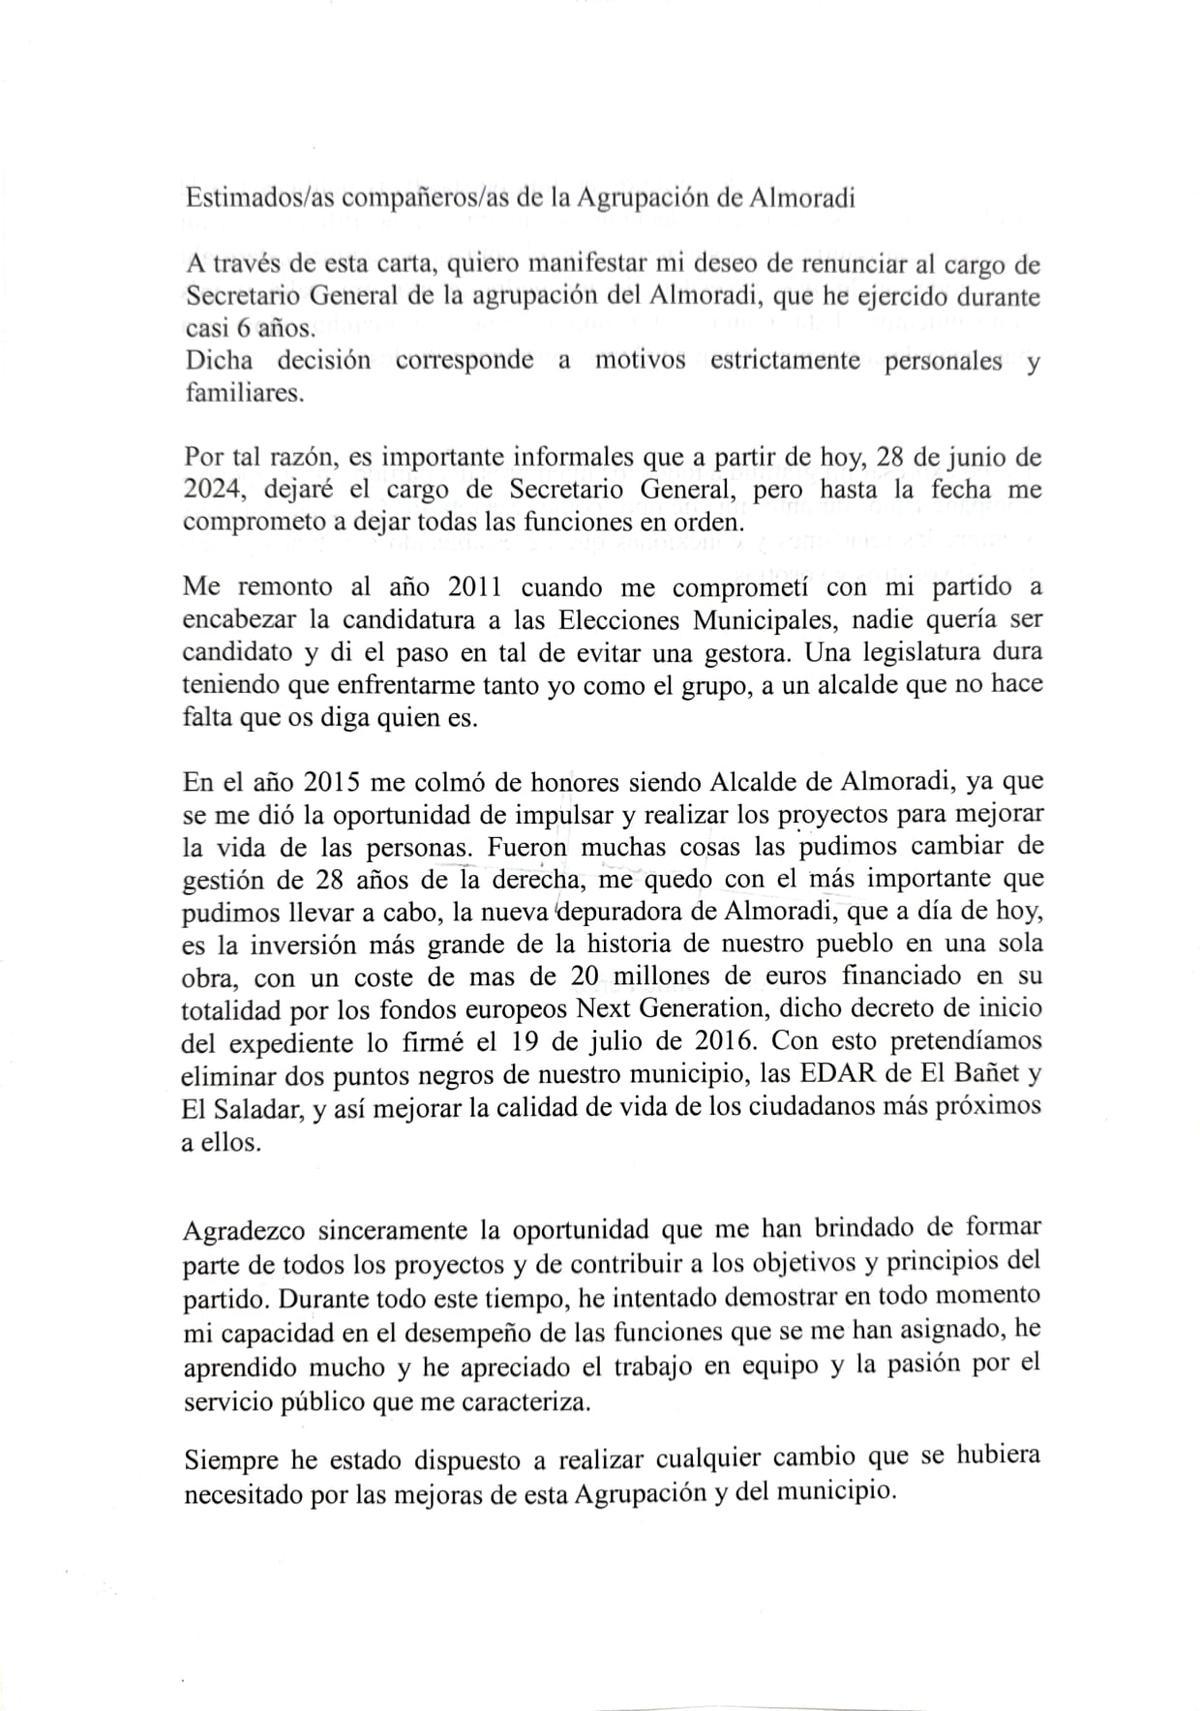 Carta de renuncia remitida a los militantes del PSOE